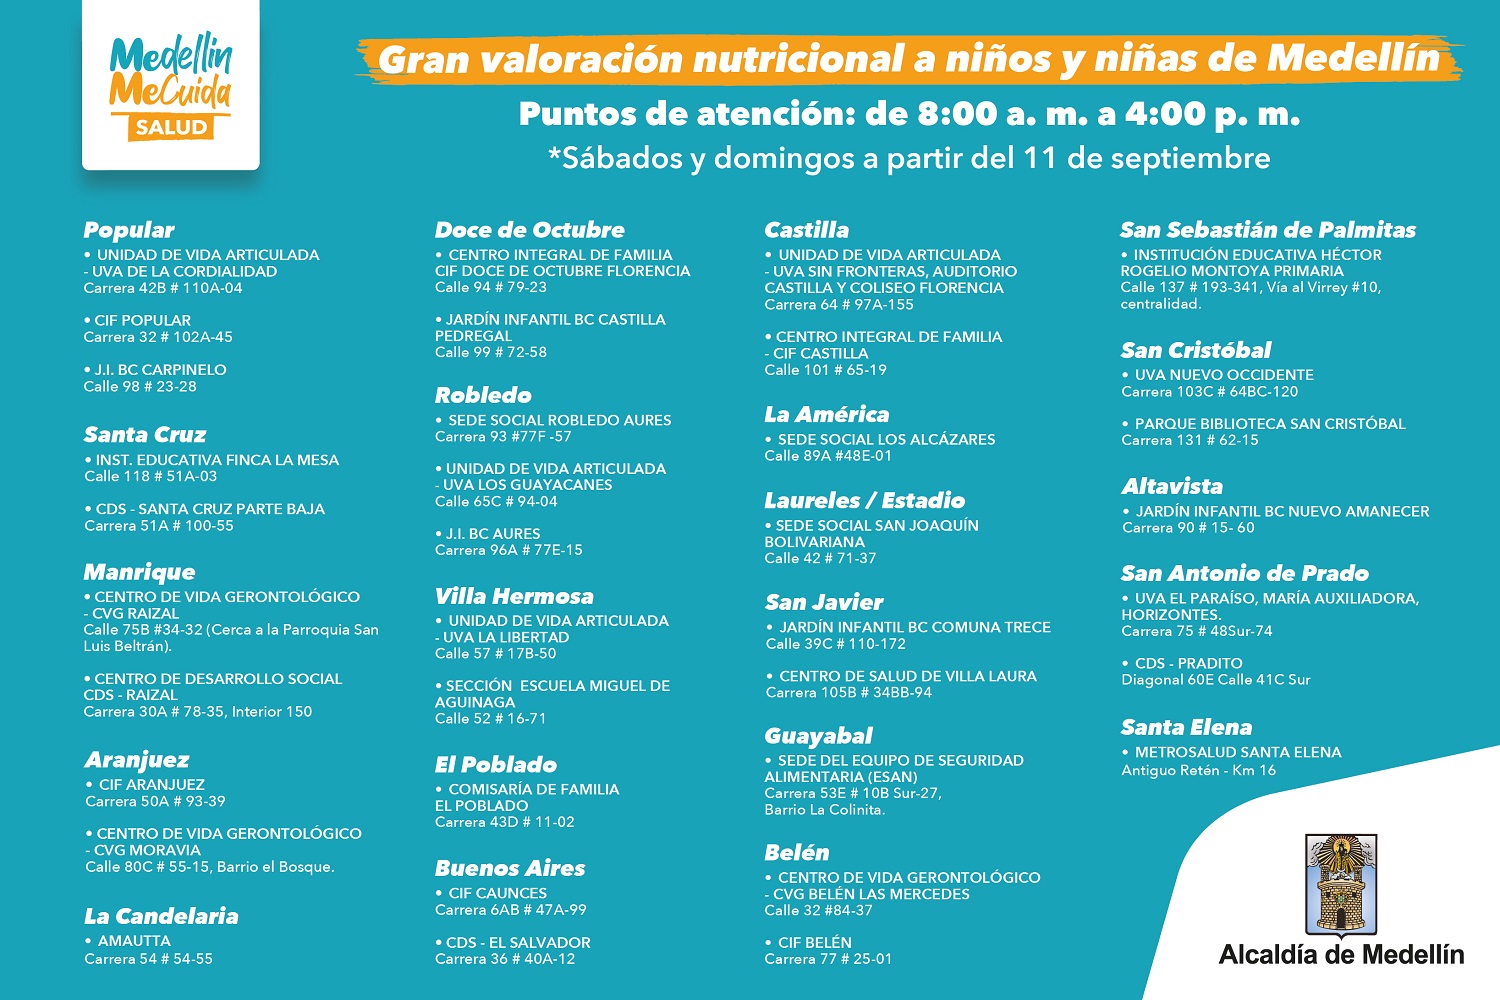 Gran valoración nutricional a niños y niñas de Medellín